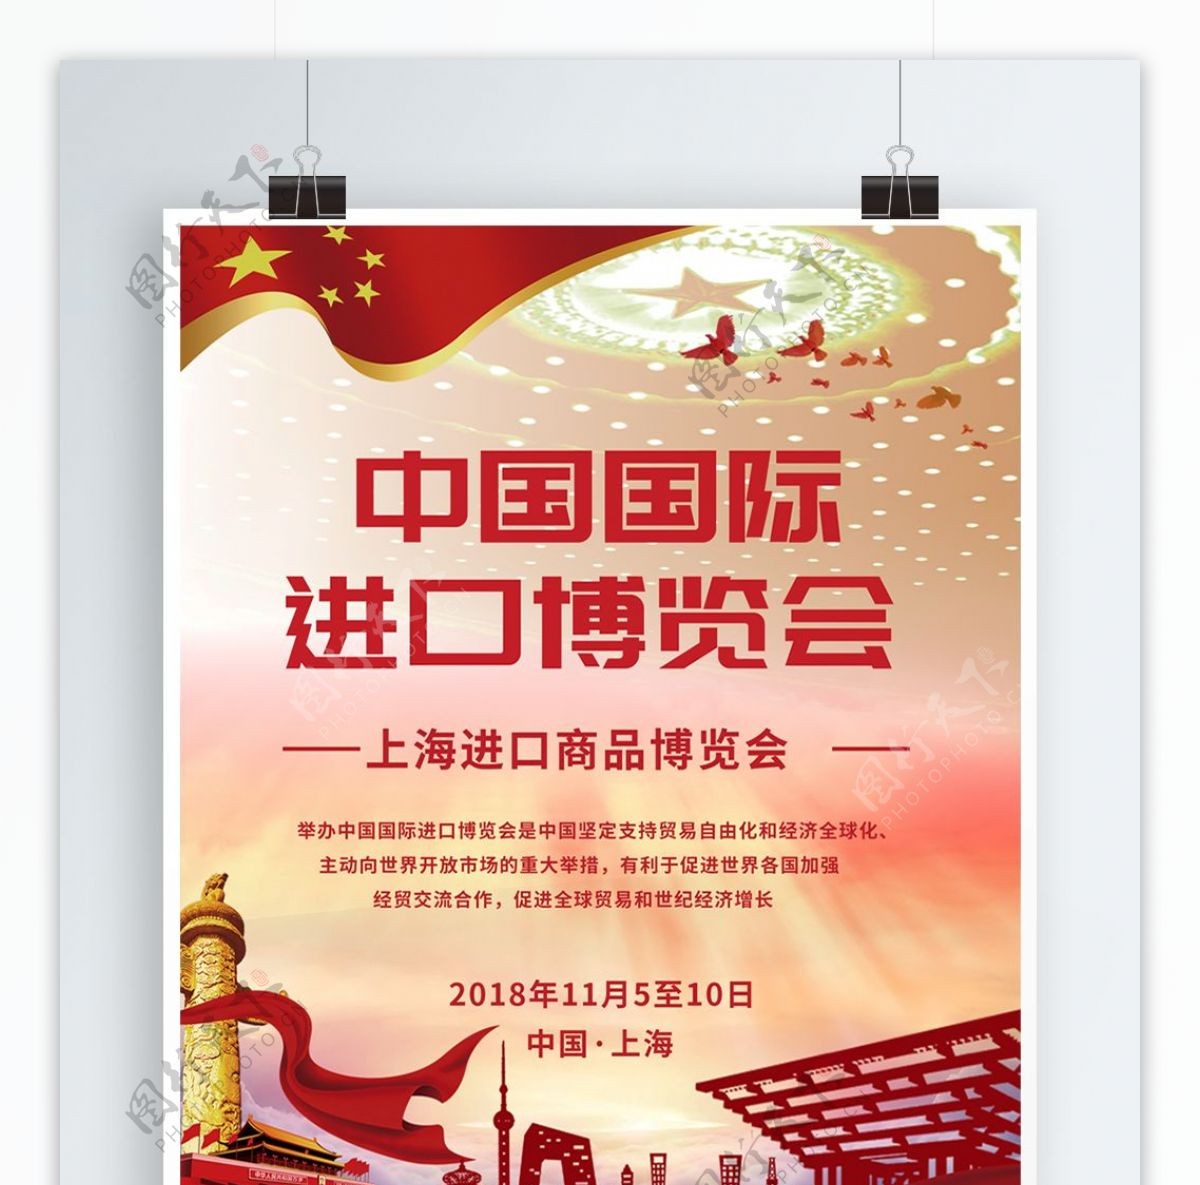 党建风中国国际进口博览会海报